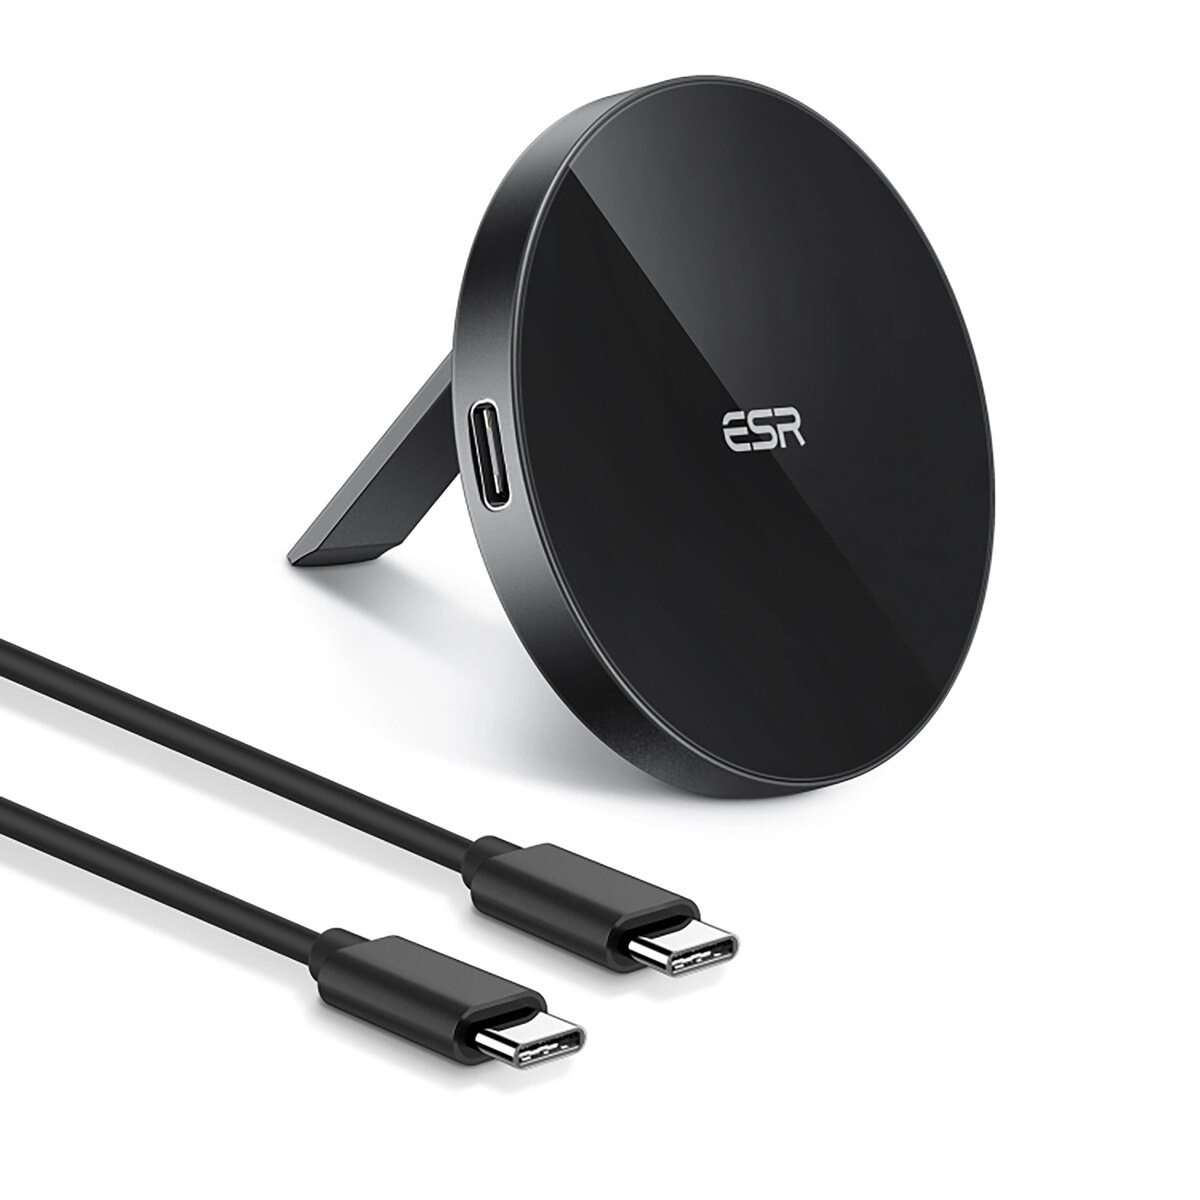 ESR Wireless Kickstand Charging Pad15W 2C515A Black